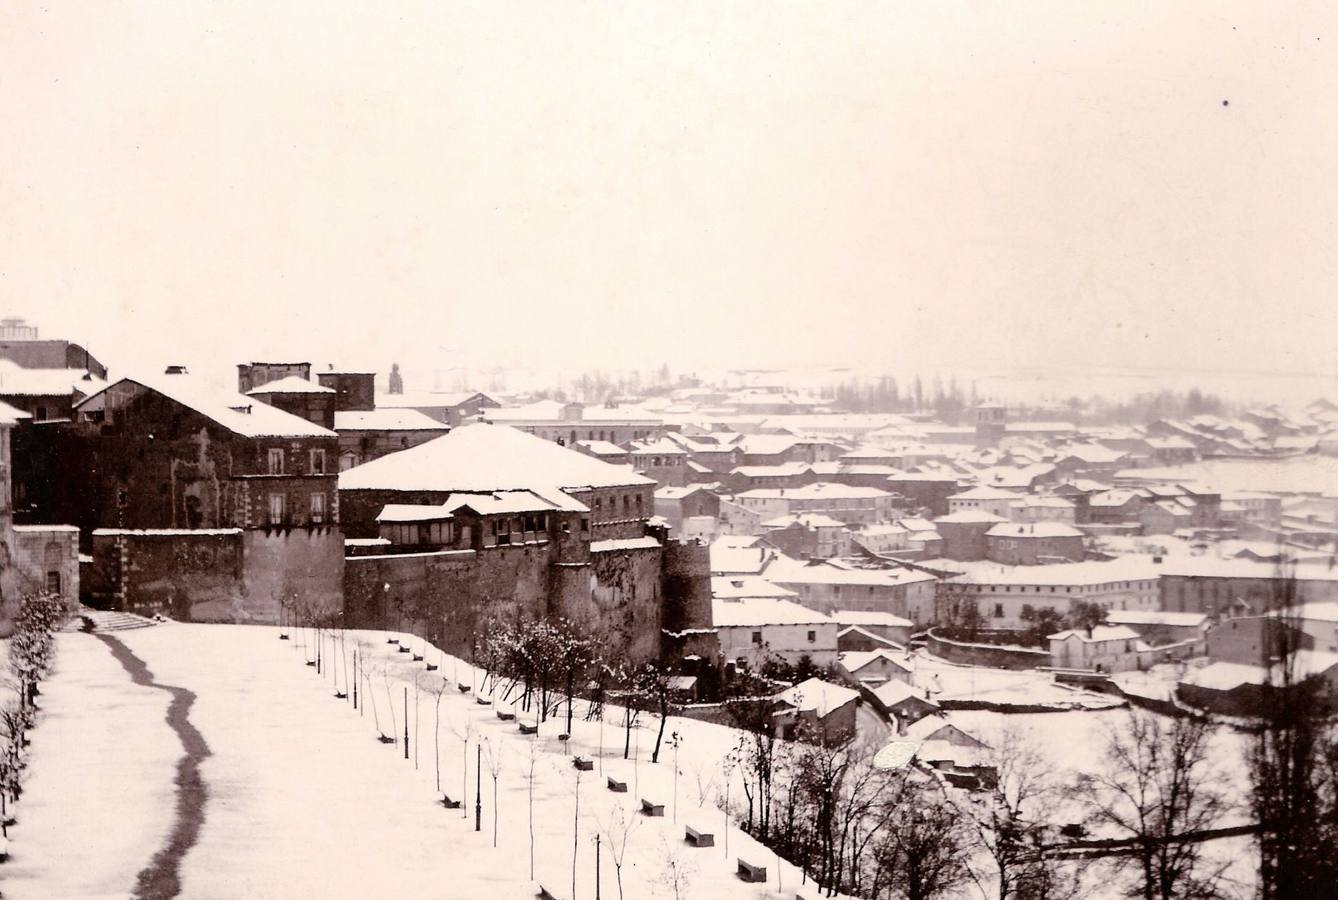 Joaquín María Castellarnau tiró esta instantánea del paseo del Salón de Segovia en la que incluso puede verse el campanario de Santa Eulalia y el puente de San Millán sobre el Clamores. La fotografía está fechada en el año 1890.